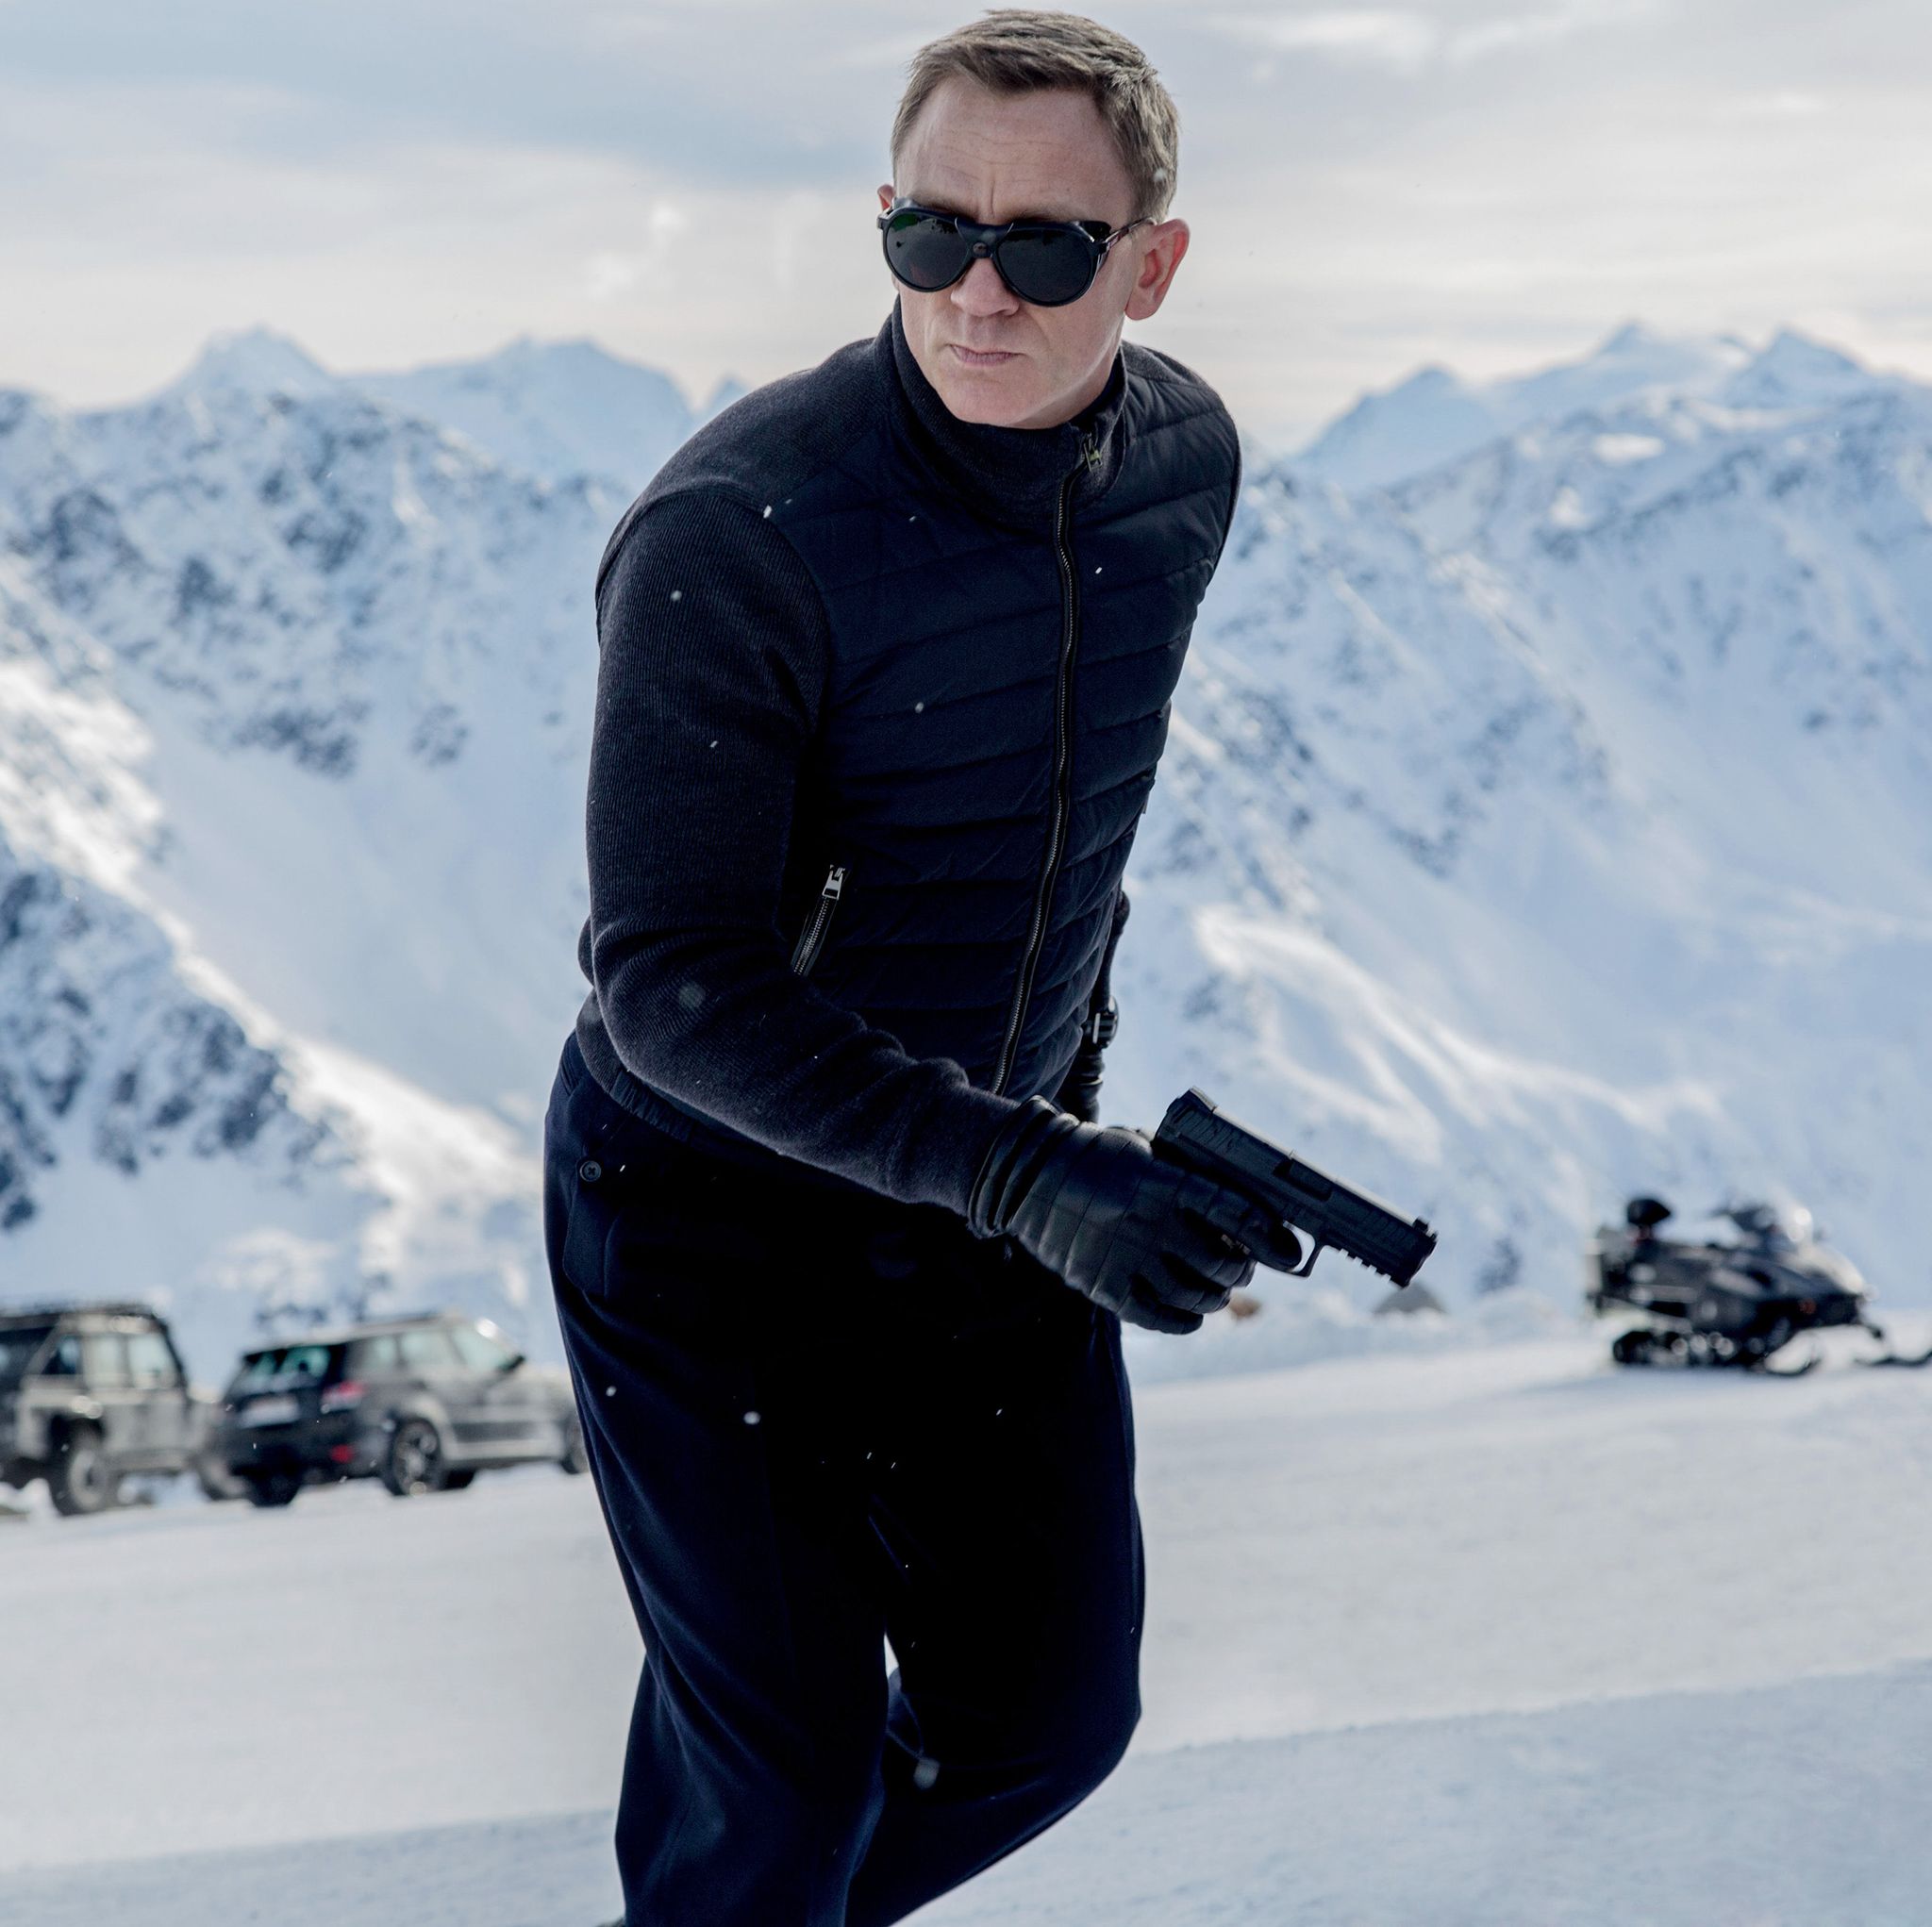 James Bond Spectre for Sky Cinema campaign